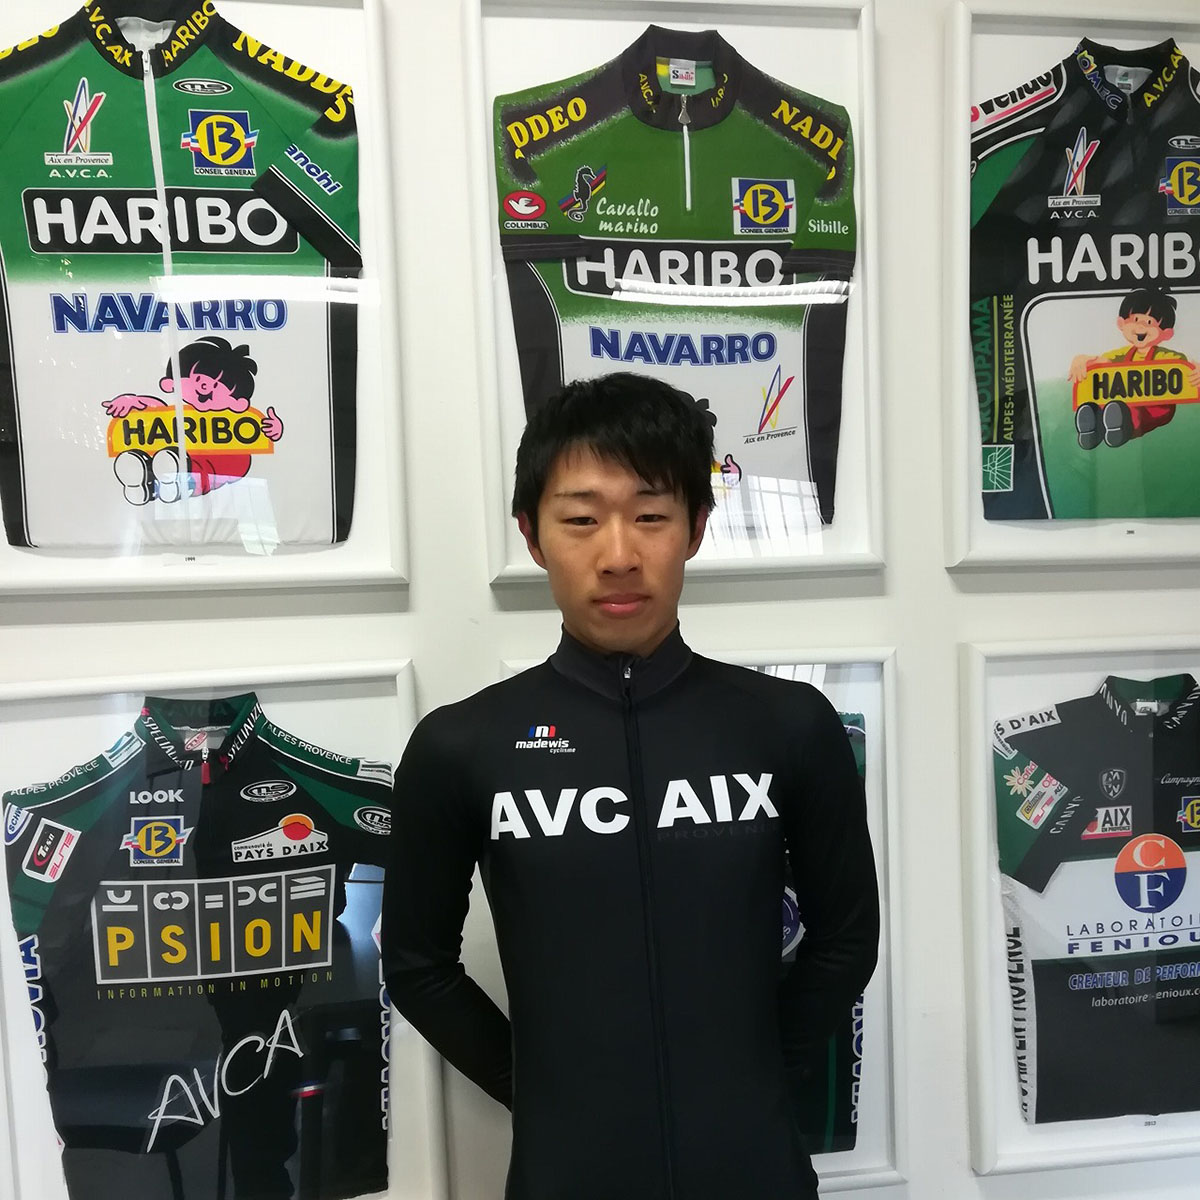 石上優大（現EFエデュケーション・NIPPOデヴェロップメントチーム）も所属していたフランスのアマチュアチーム「AVCAIX」に加入した松田祥位